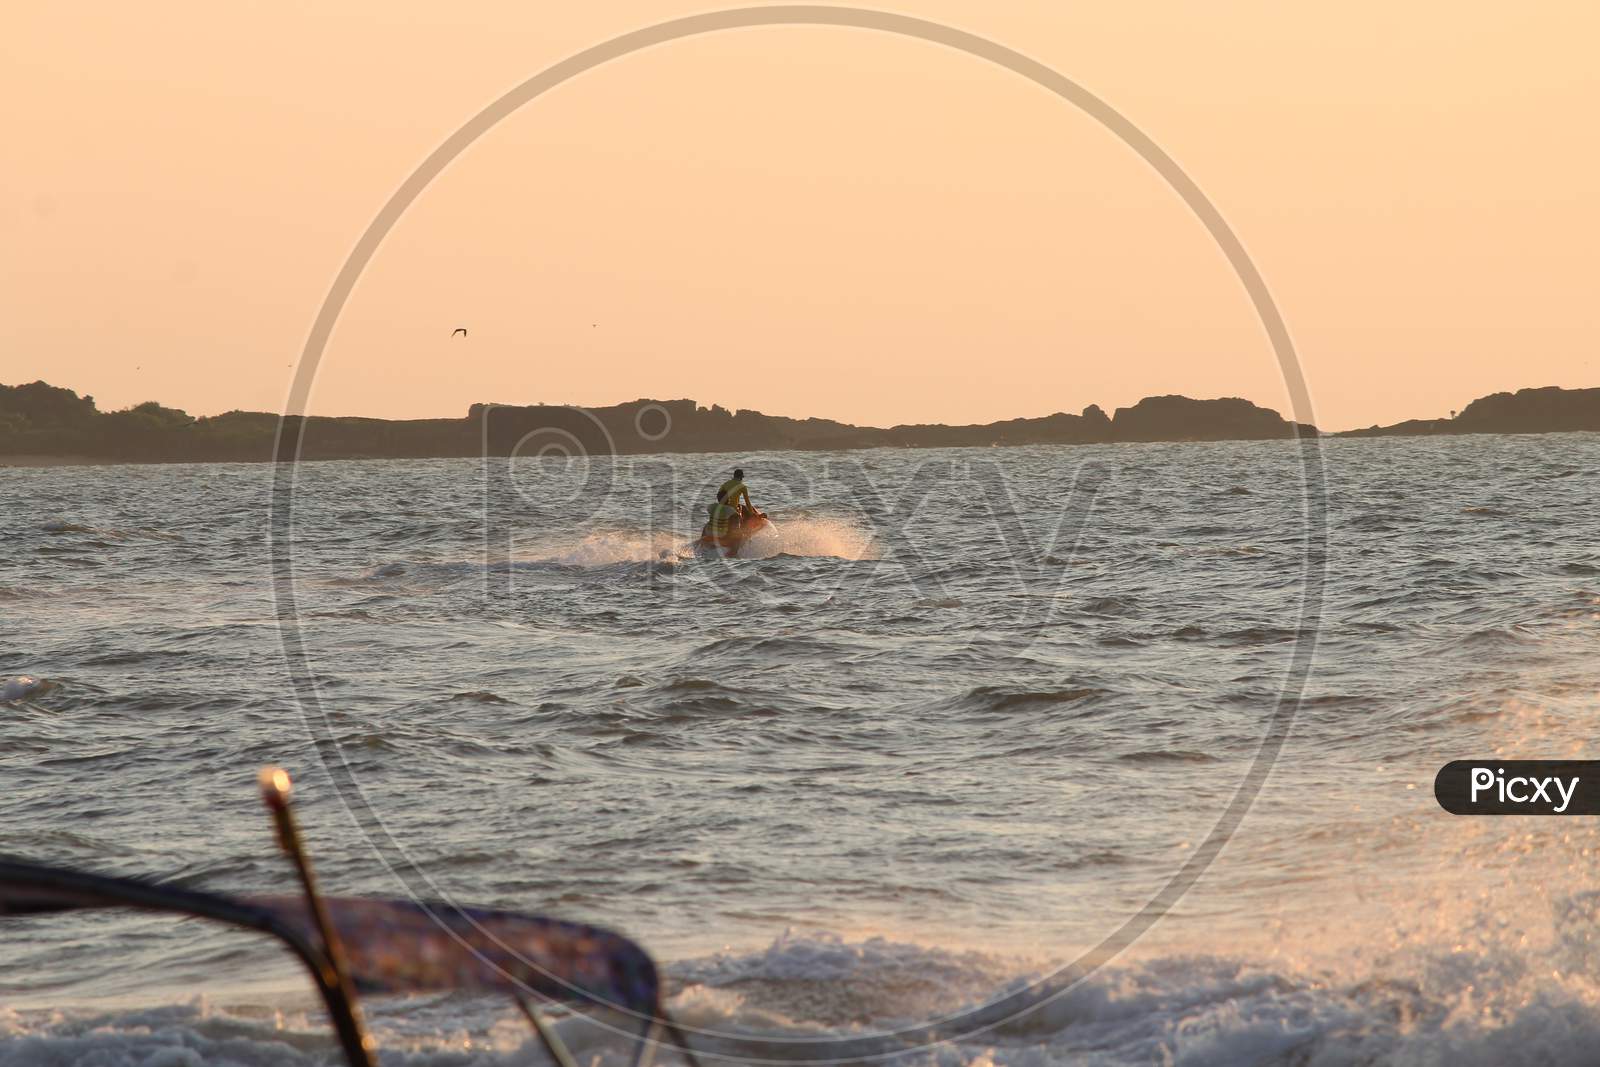 sunset  and water sports at malpe beach udupi karnataka